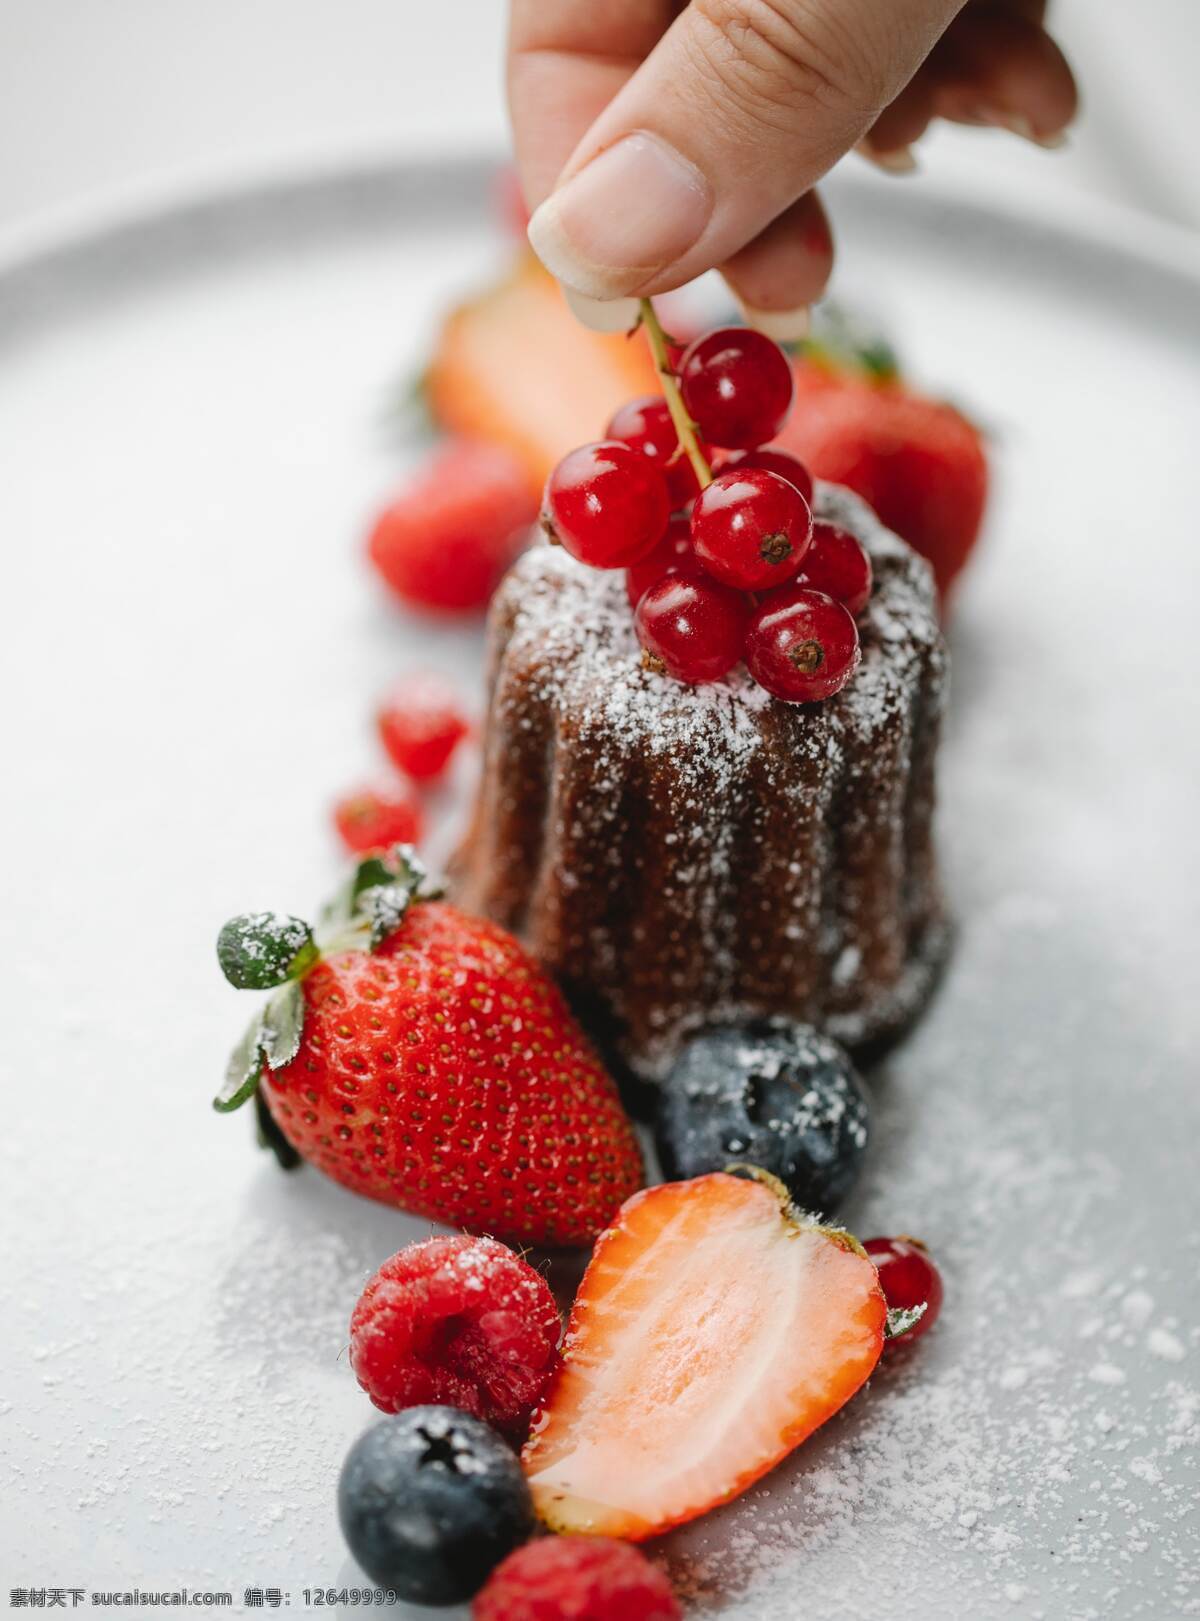 蛋糕图片 蛋糕 草莓 樱桃 蓝莓 巧克力蛋糕 奶油蛋糕 可可粉 水果 巧克力豆 甜点 糕点 美味 美食 烘焙食品 零食 餐饮美食 西餐美食